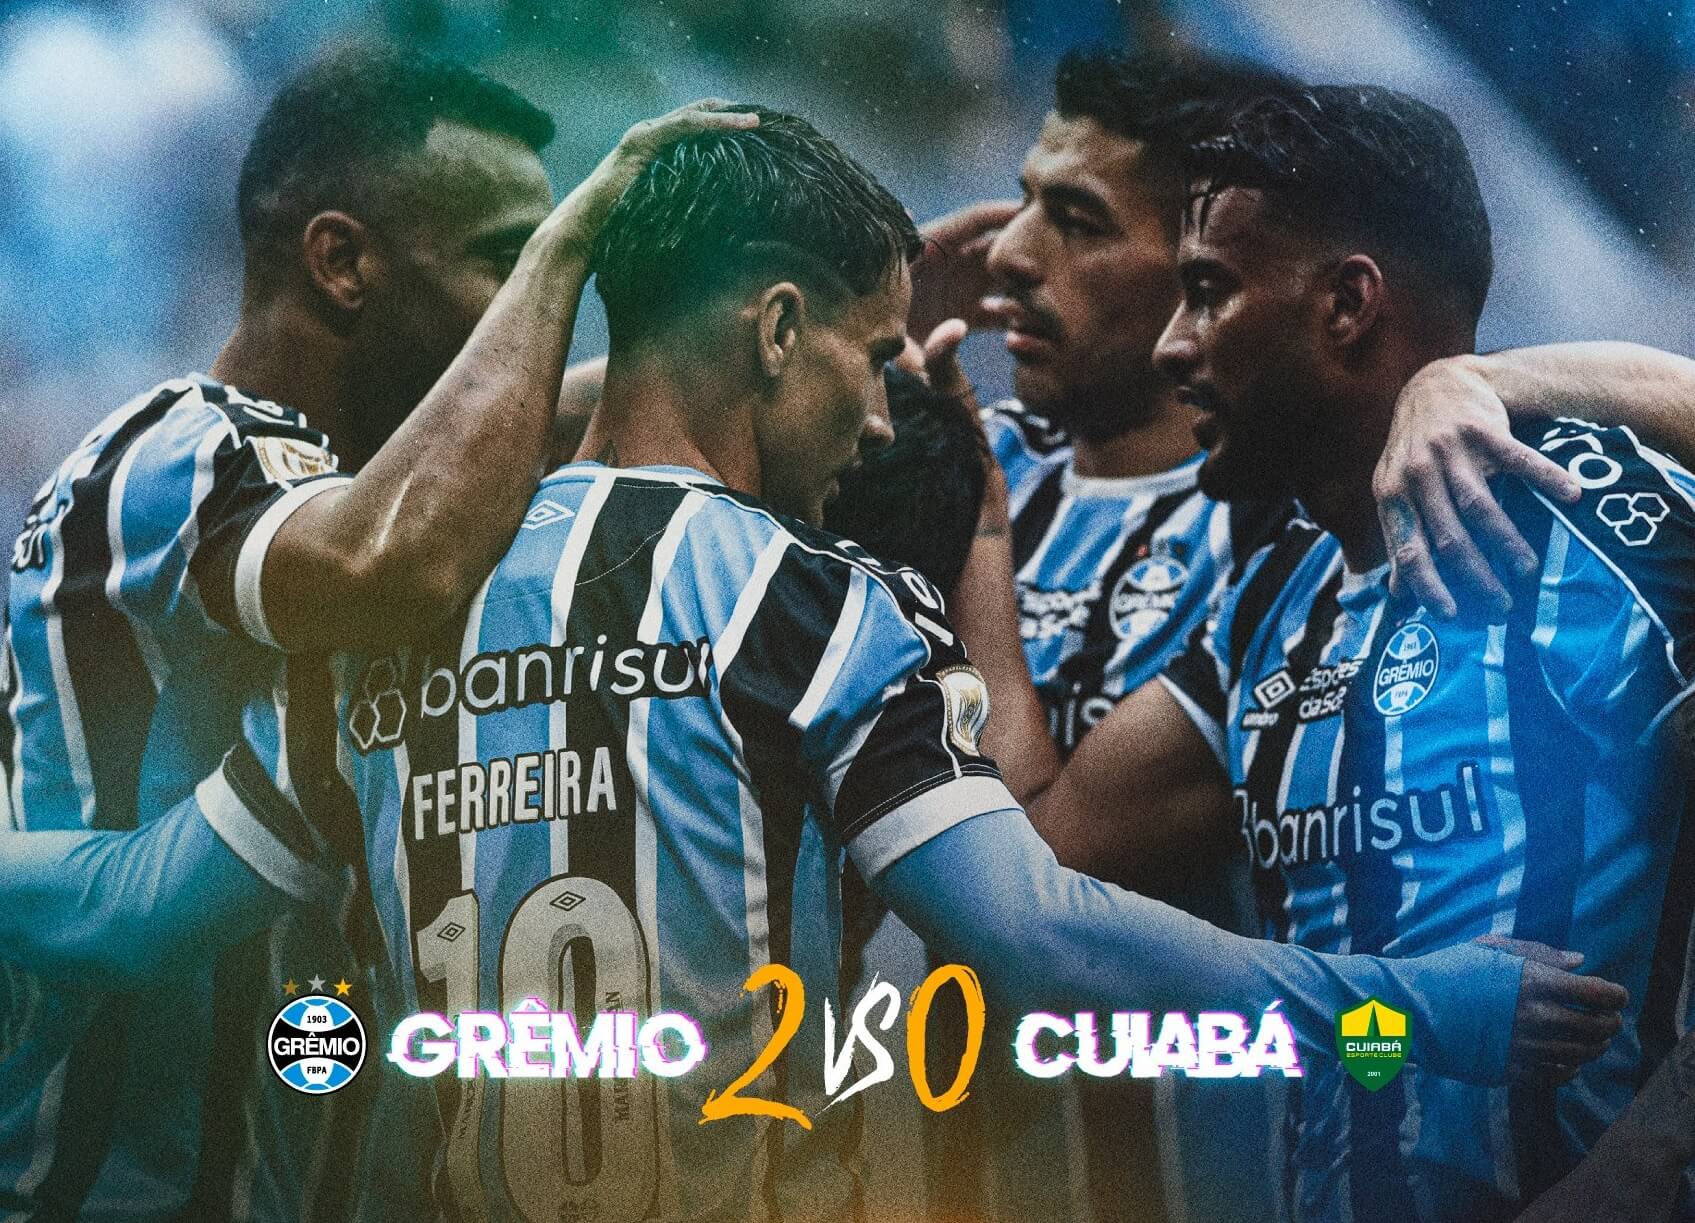 Grêmio vs Fortaleza: Clash of Titans